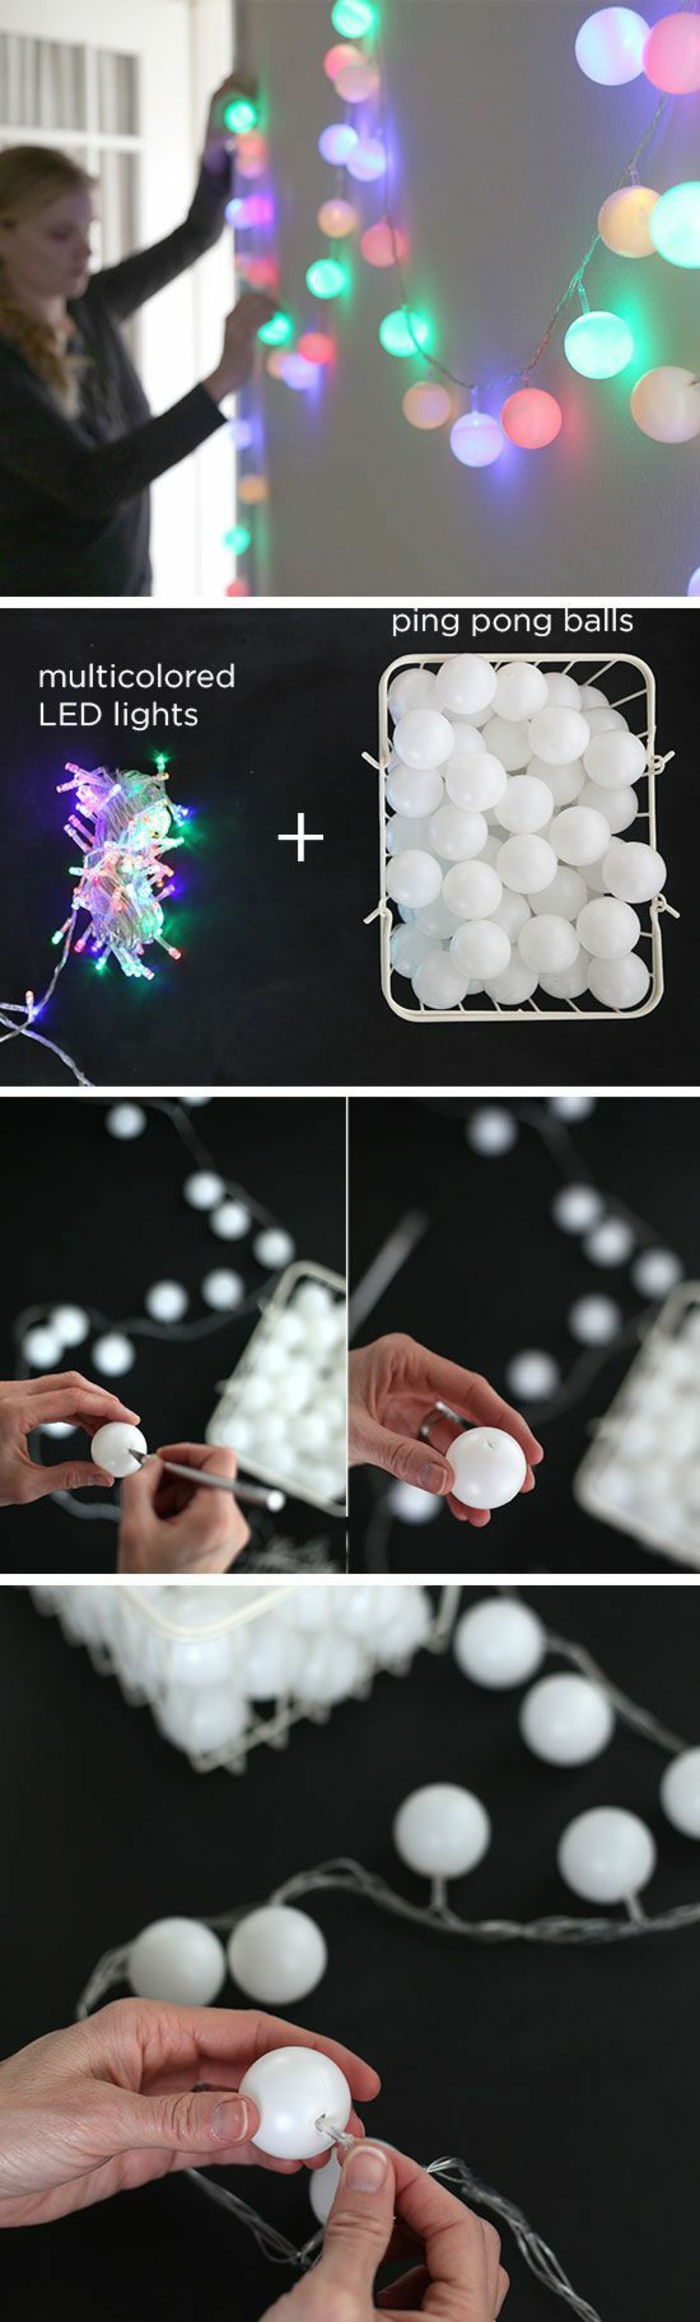 maak zelf wanddecoratie, lampen, kleine witte plastic ballen